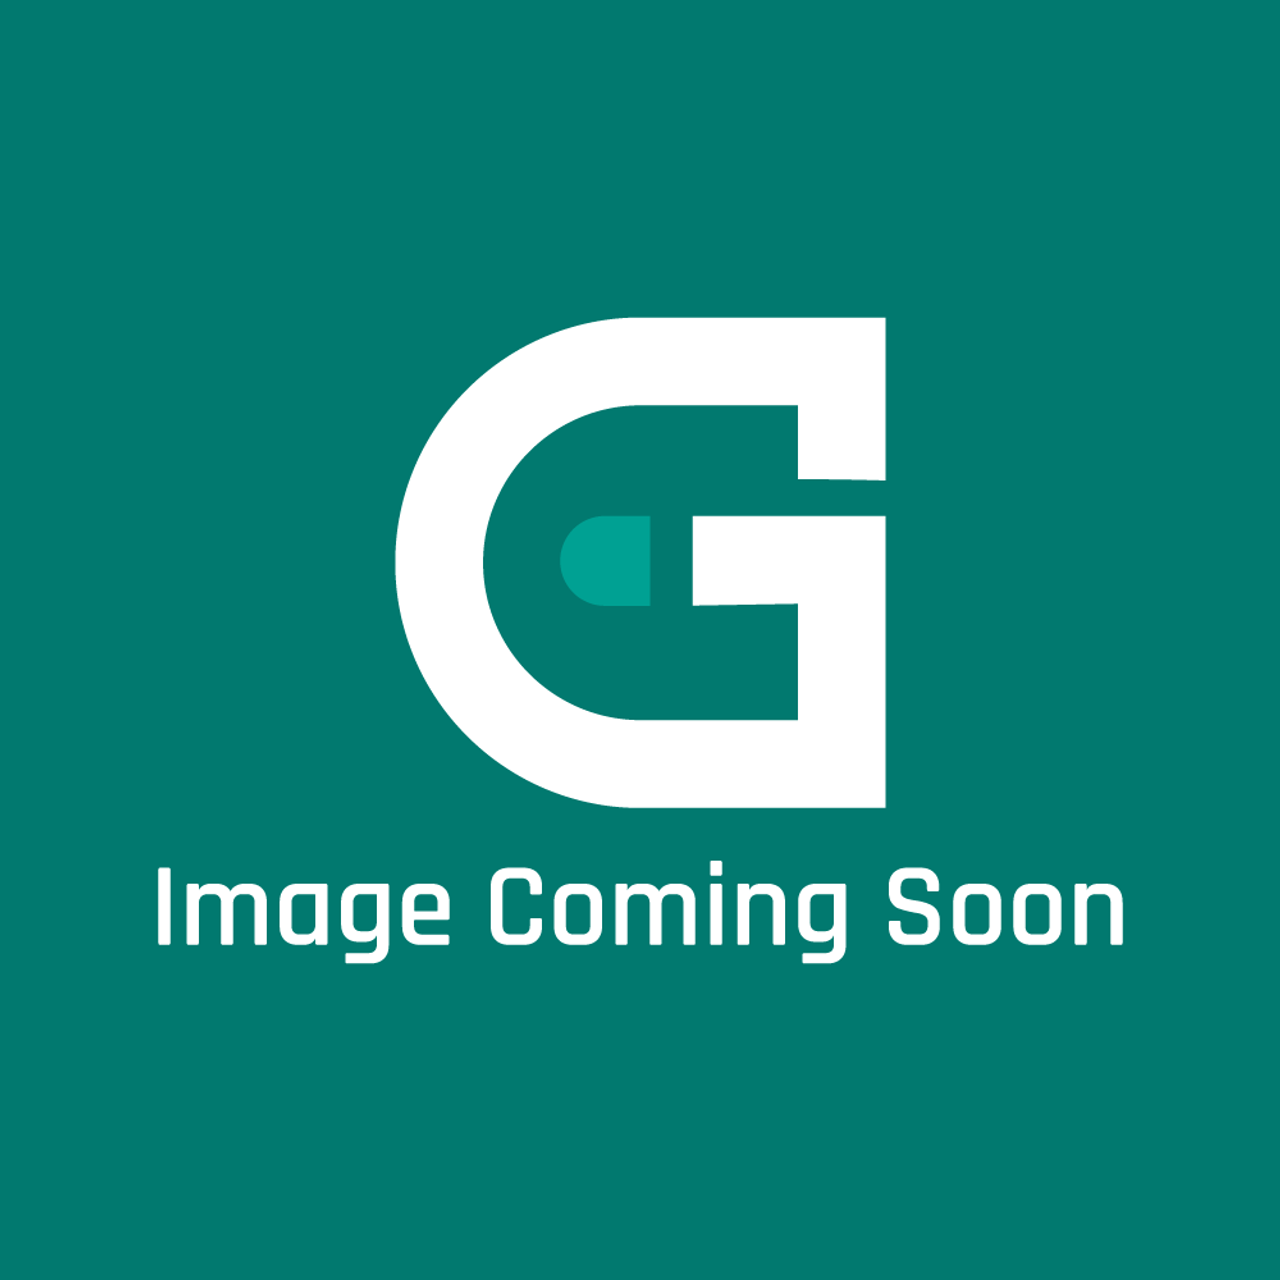 GE Appliances WB06X10410 - Screen Door - Image Coming Soon!